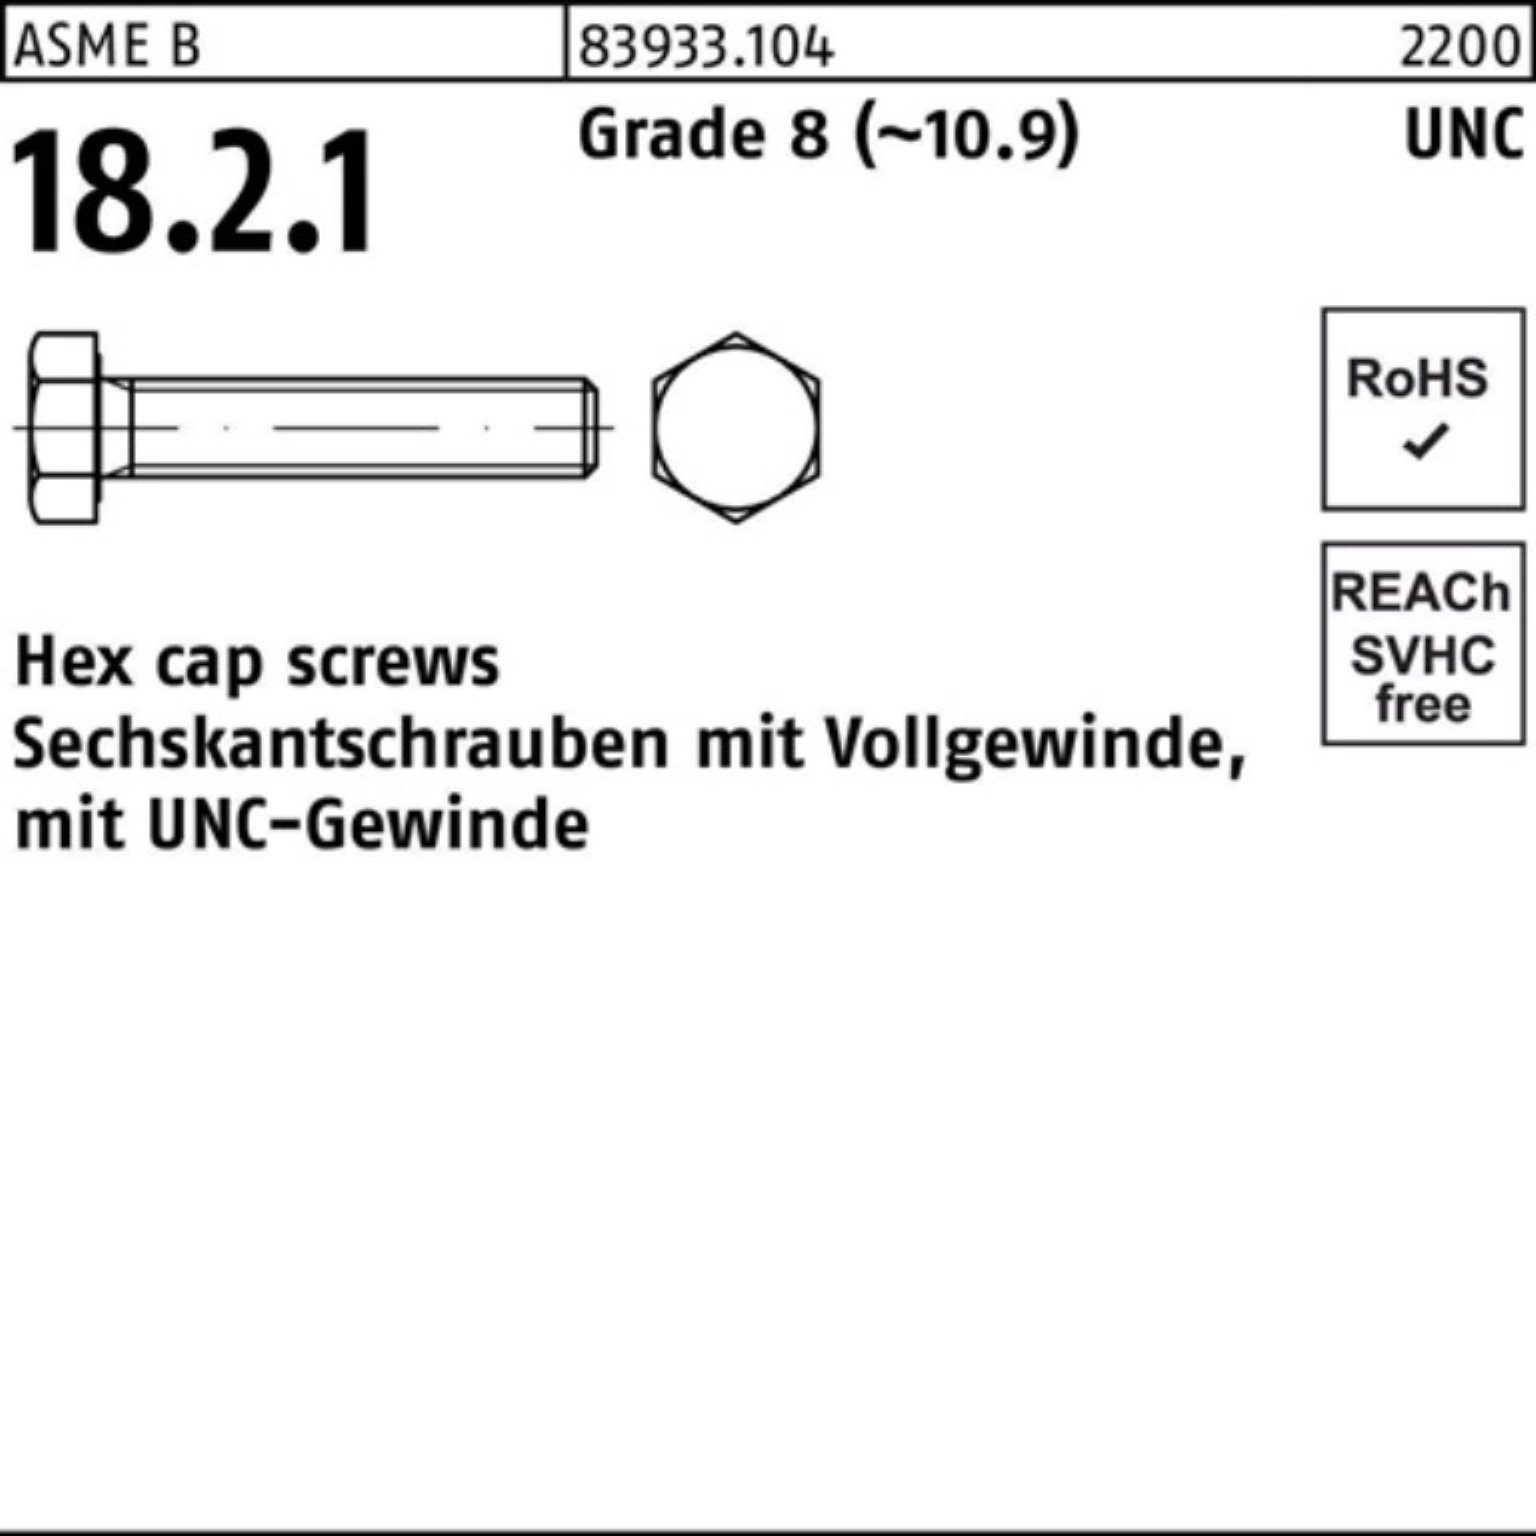 Reyher Sechskantschraube 100er Pack Sechskantschraube R 83933 UNC-Gewinde VG 5/16x 3/4 Grade 8